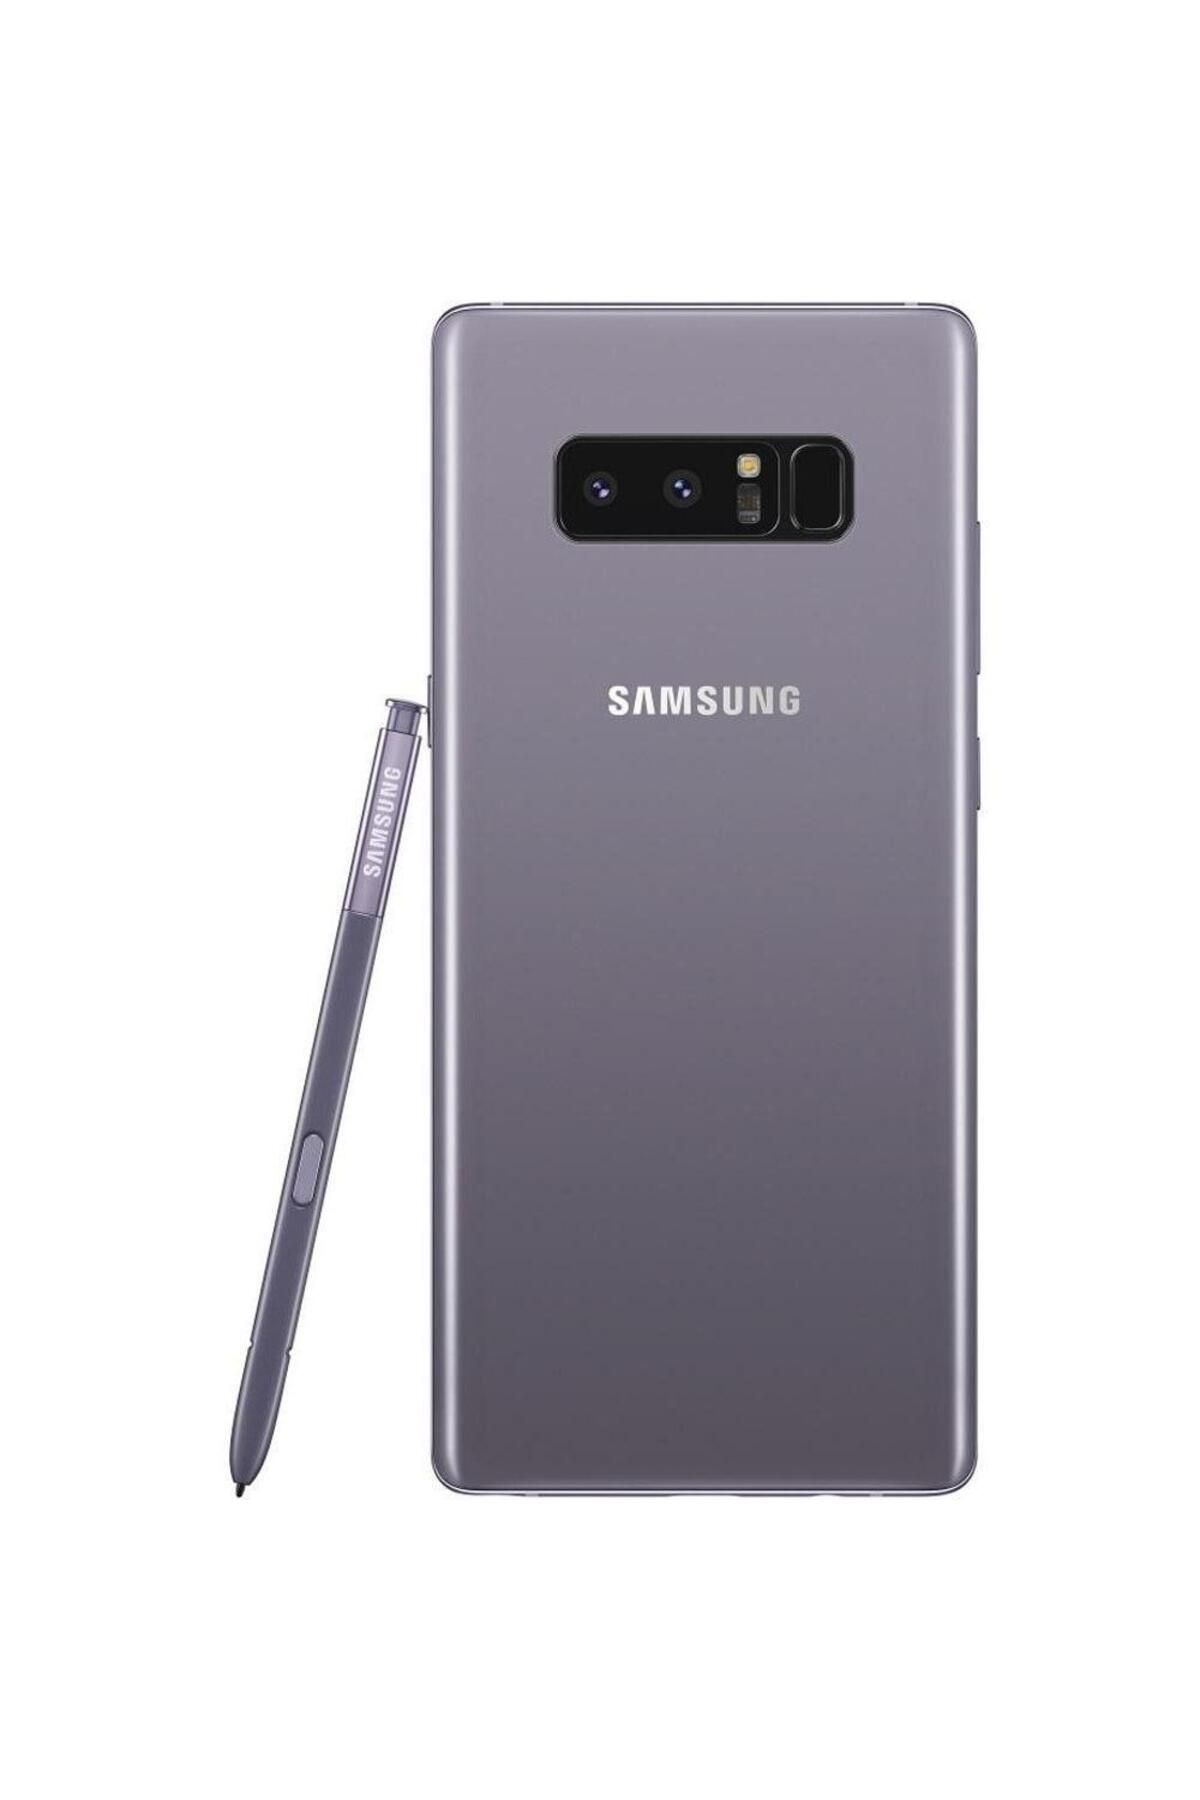 Samsung Yenilenmiş Samsung Galaxy Note 8 64GB Gri B Kalite